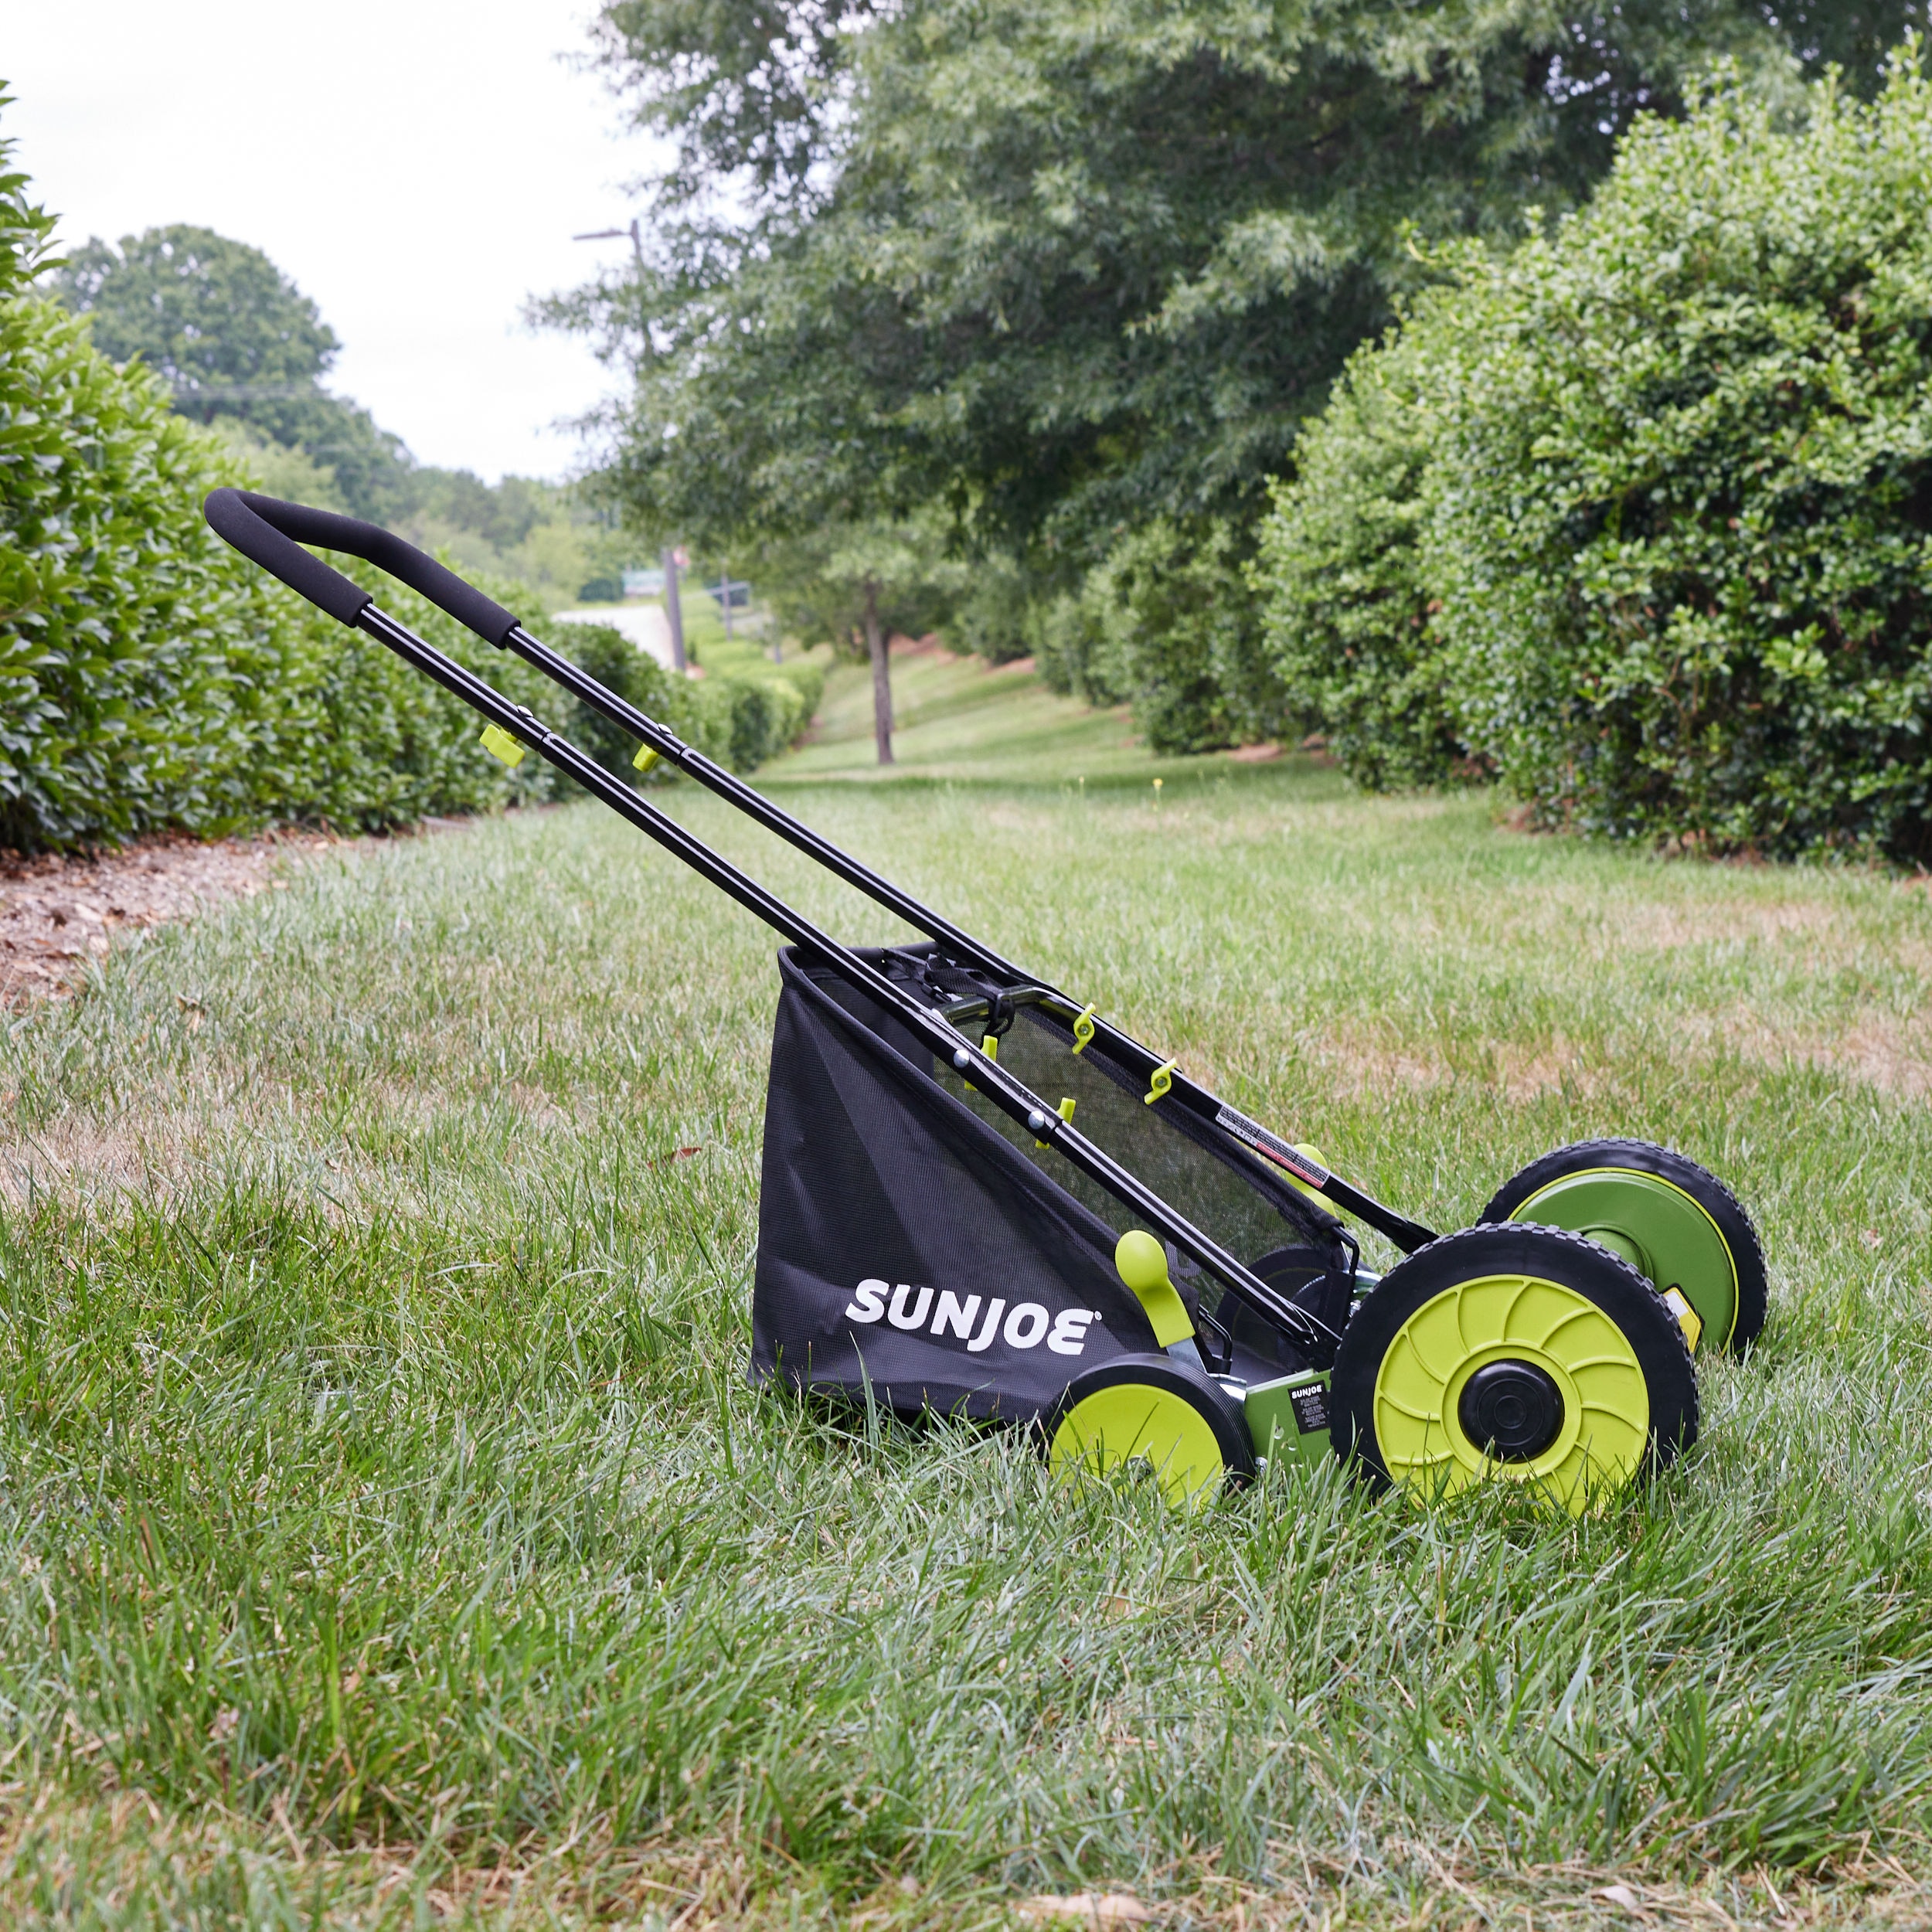  Reel Mower 20inch, Reel Lawn Mower with Adjustable